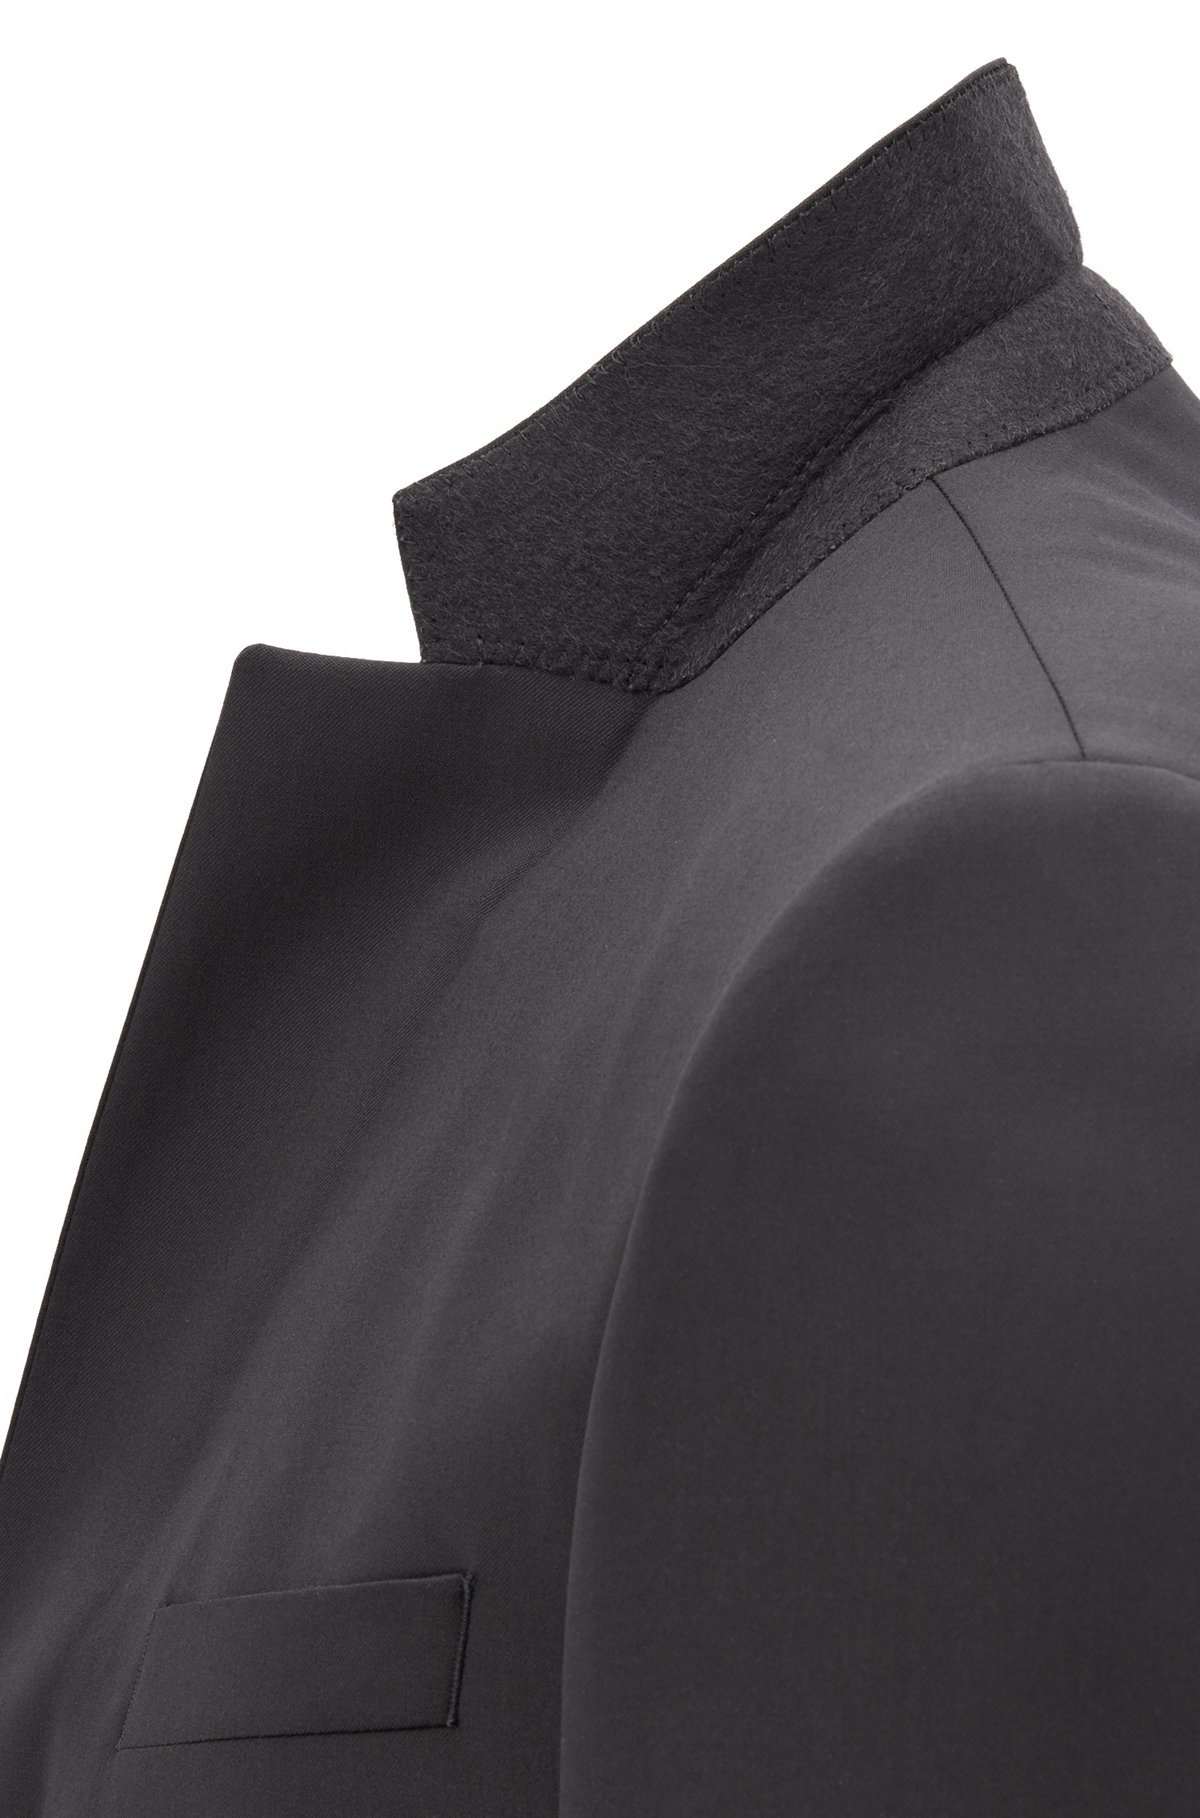 Slim-fit tuxedo in virgin wool with silk trims, Black